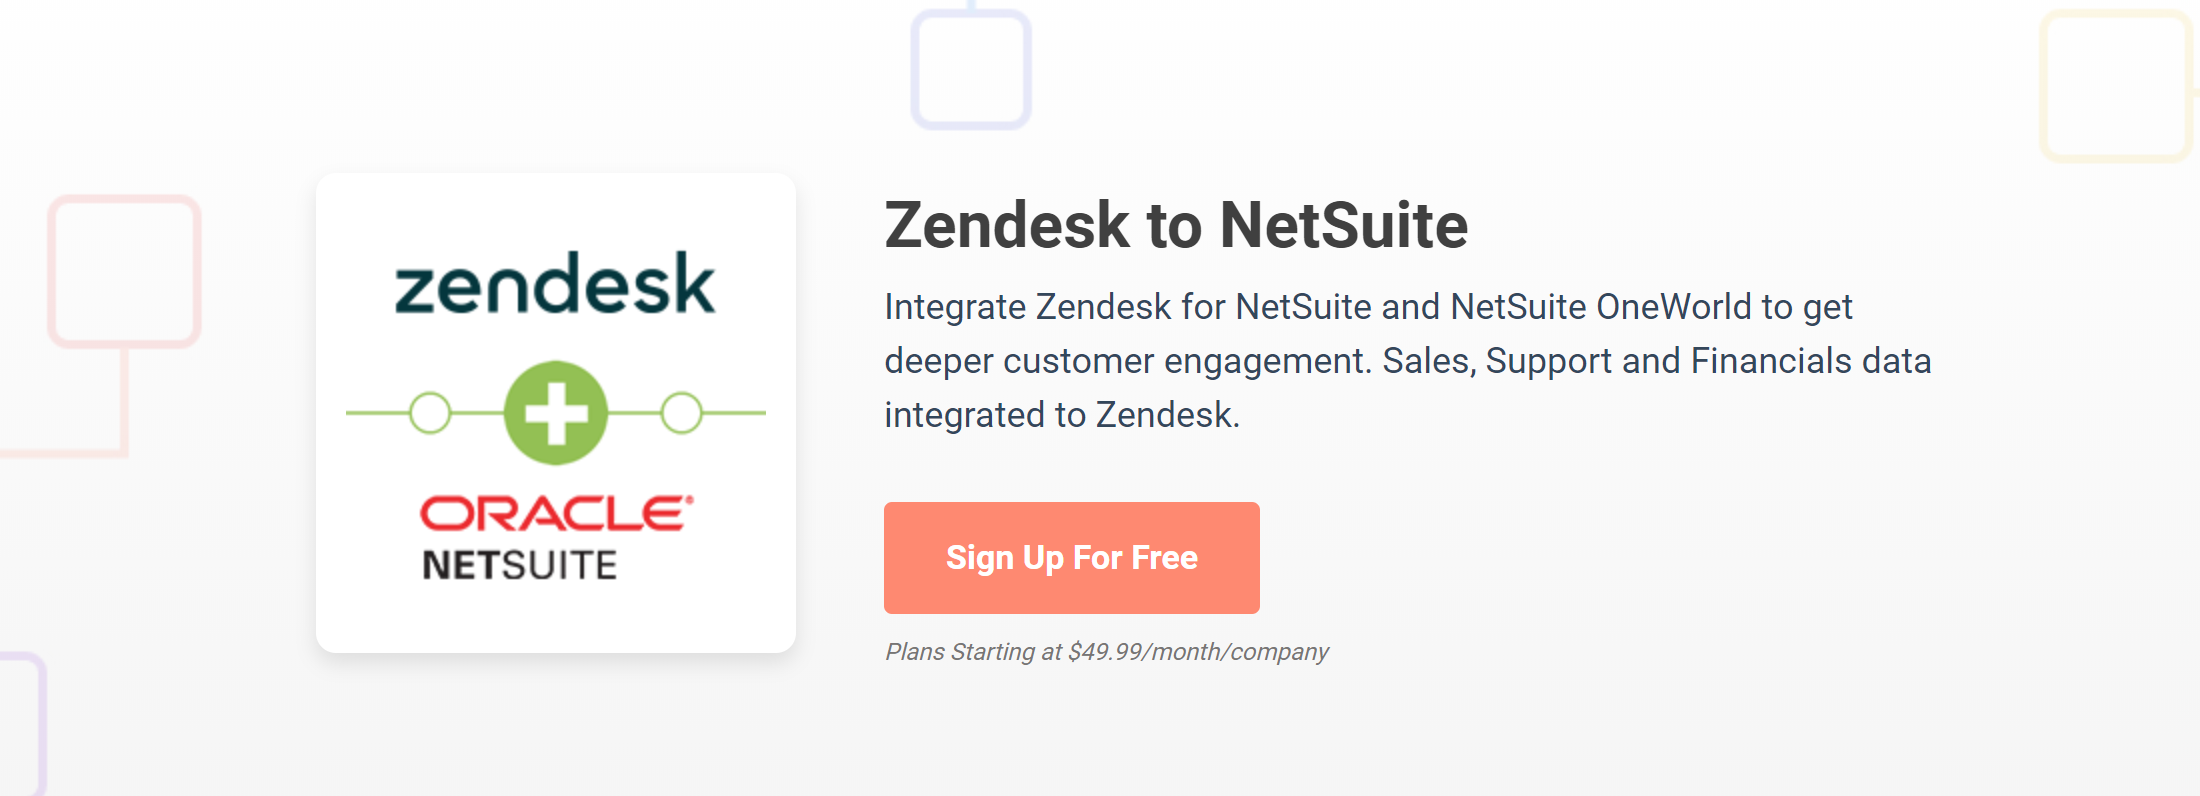 Zendesk for NetSuite